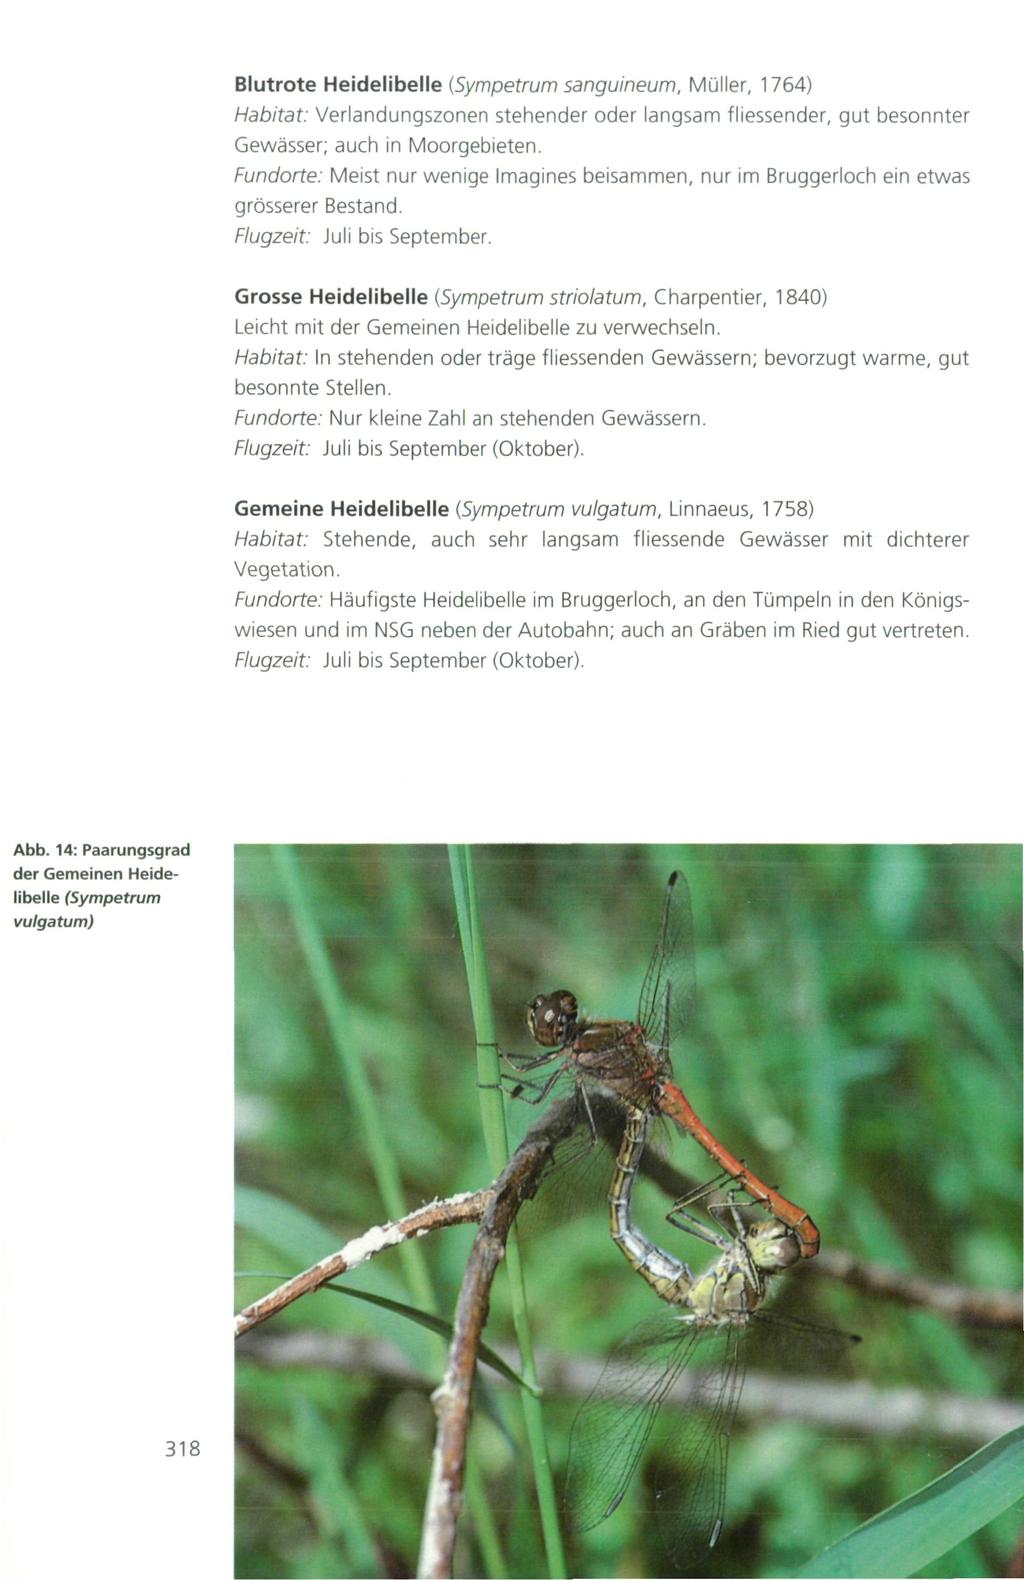 Blutrote Heidelibelle {Sympetrum sanguineum, Müller, 764) Habitat: Verlandungszonen stehender oder langsam fliessender, gut besonnter Gewässer; auch in Moorgebieten.